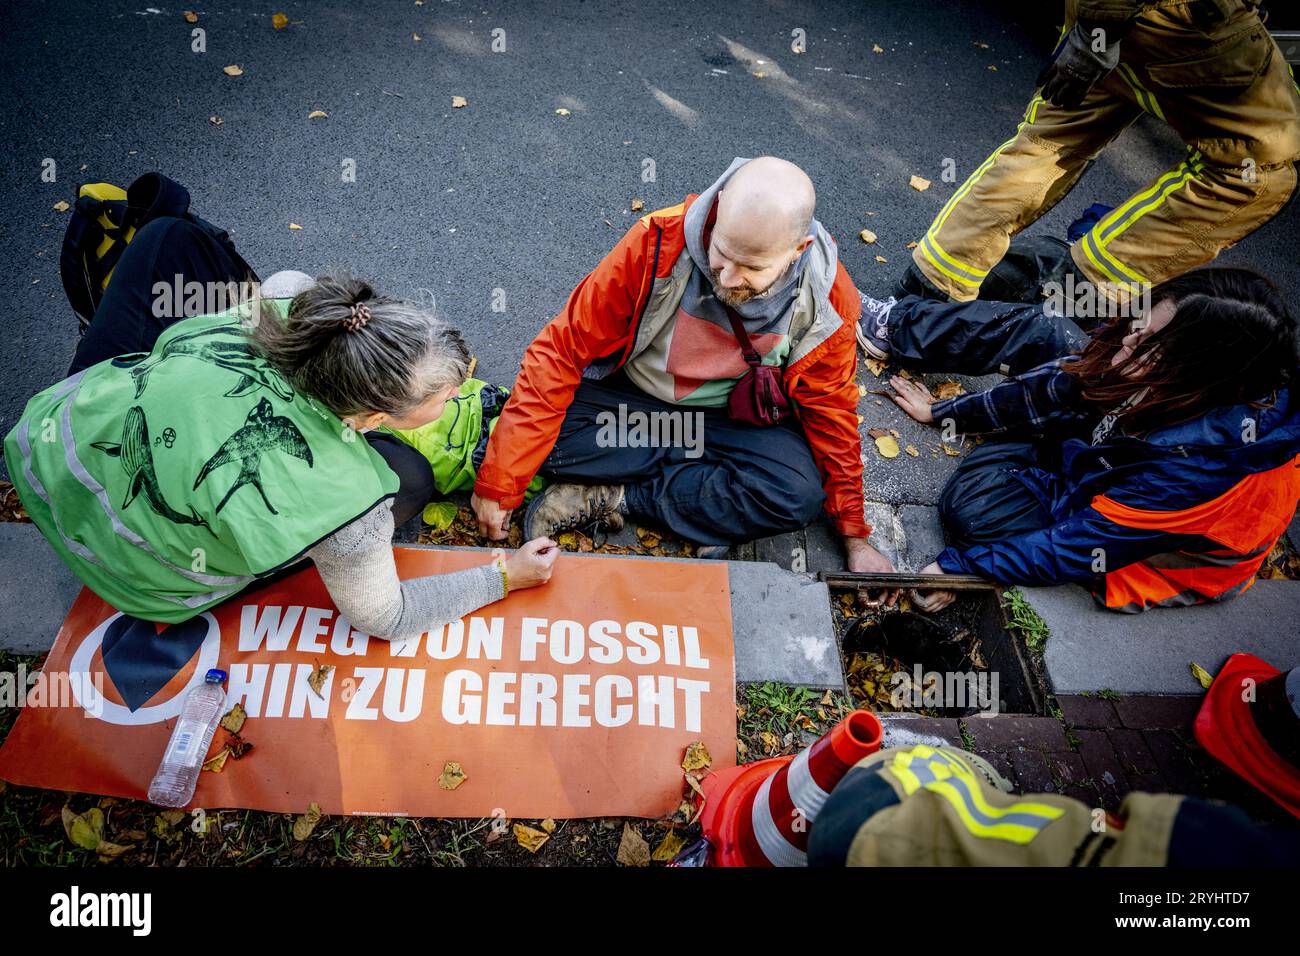 DEN HAAG - die Polizei verhaftete Gegendemonstratoren, die gegen die Blockade durch Klimaaktivisten auf der A12 vorgegangen sind. Dutzende von Menschen reagierten auf den Aufruf in den sozialen Medien, zur täglichen Blockade zu kommen und Unzufriedenheit auszudrücken. ANP ROBIN UTRECHT netherlands Out - belgium Out Credit: ANP/Alamy Live News Stockfoto